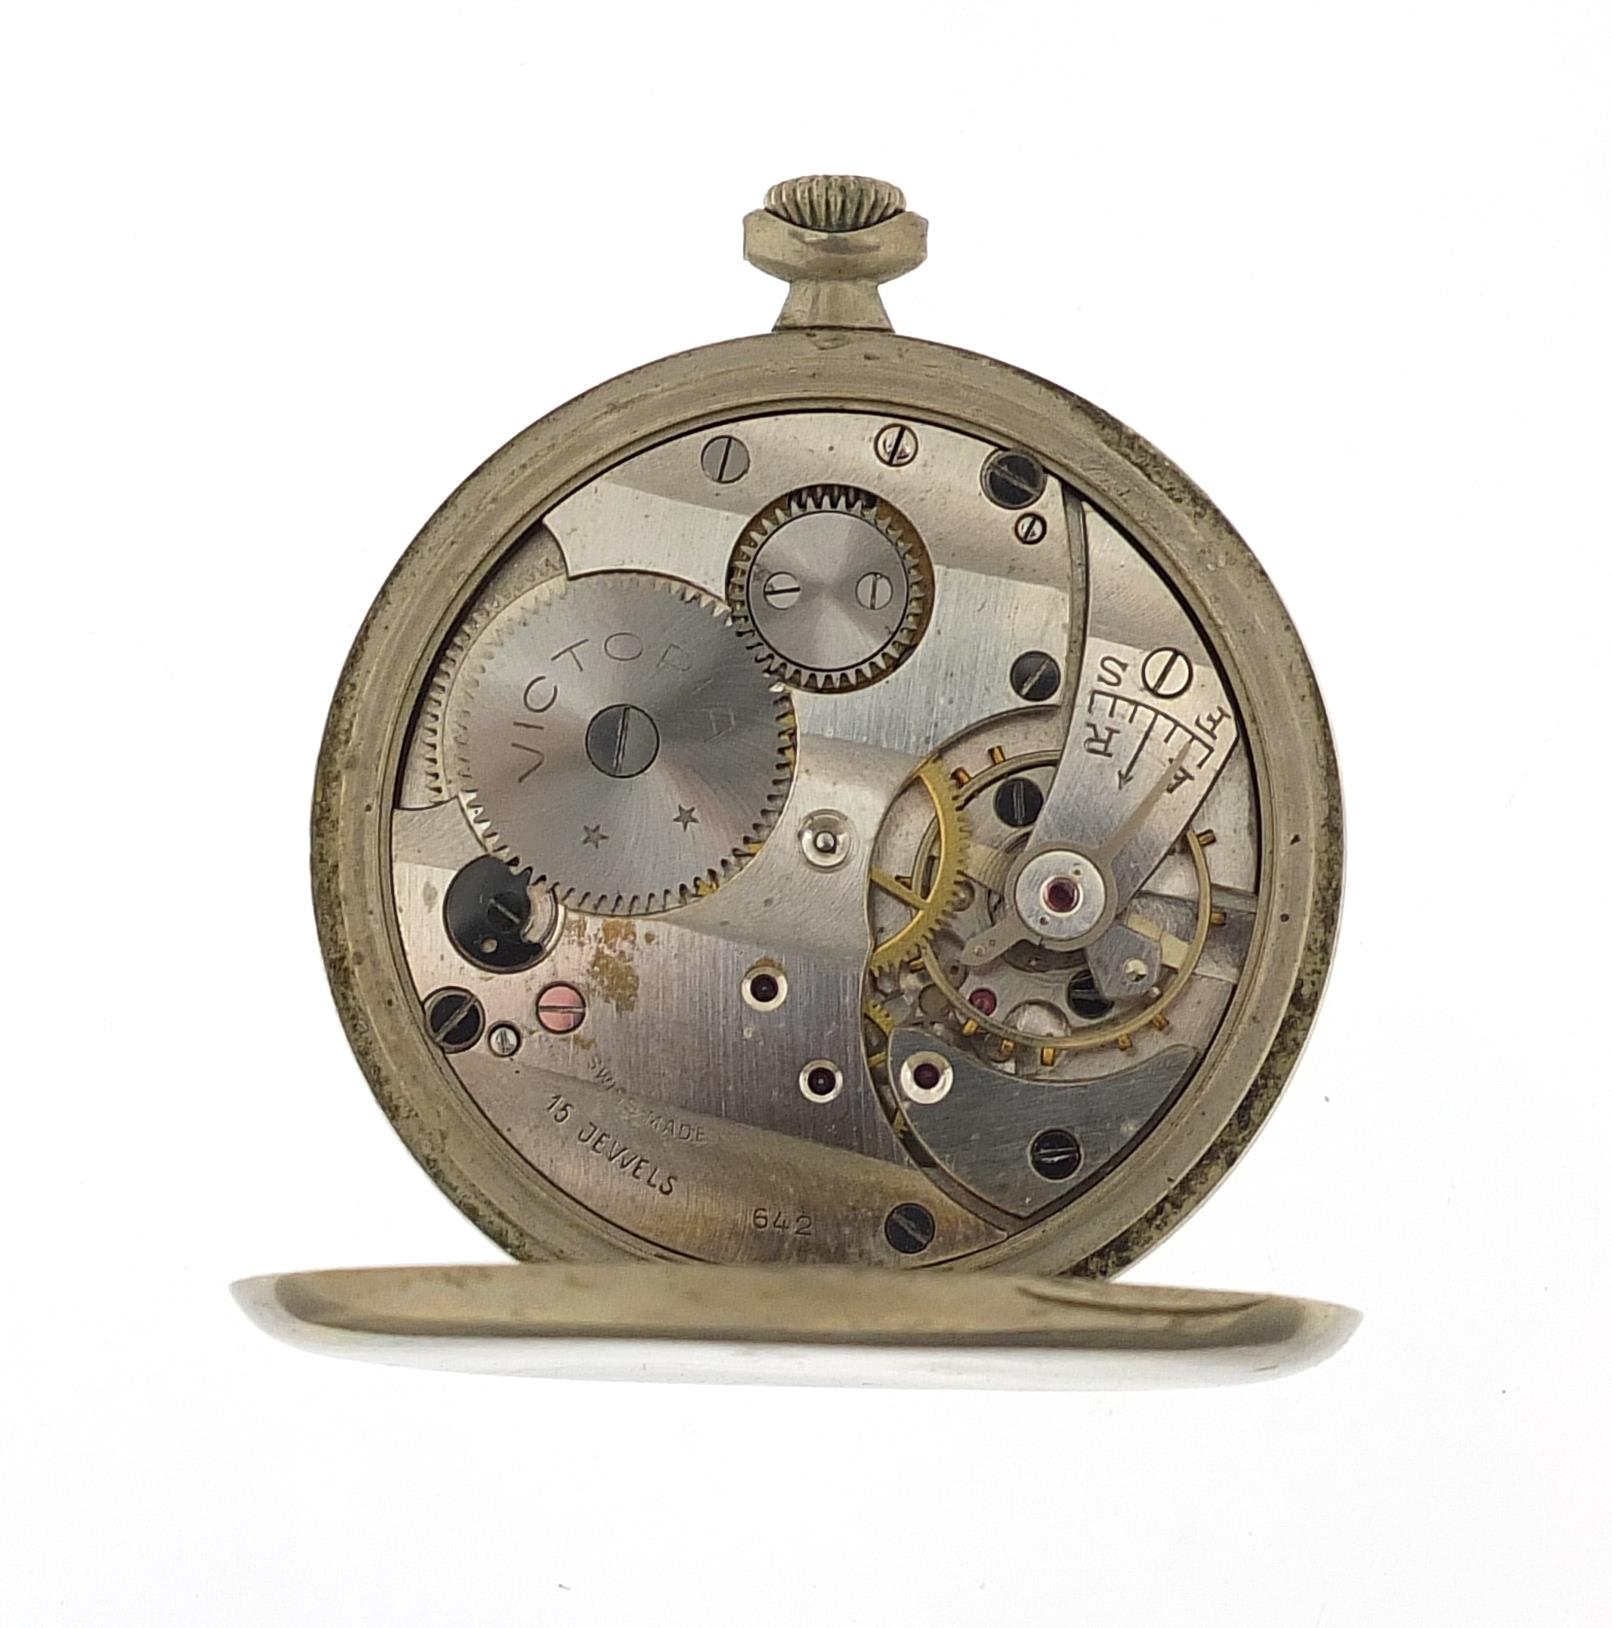 Victoria, gentlemen's open face pocket watch, the case numbered 217964 5902, 48mm in diameter - Image 3 of 4